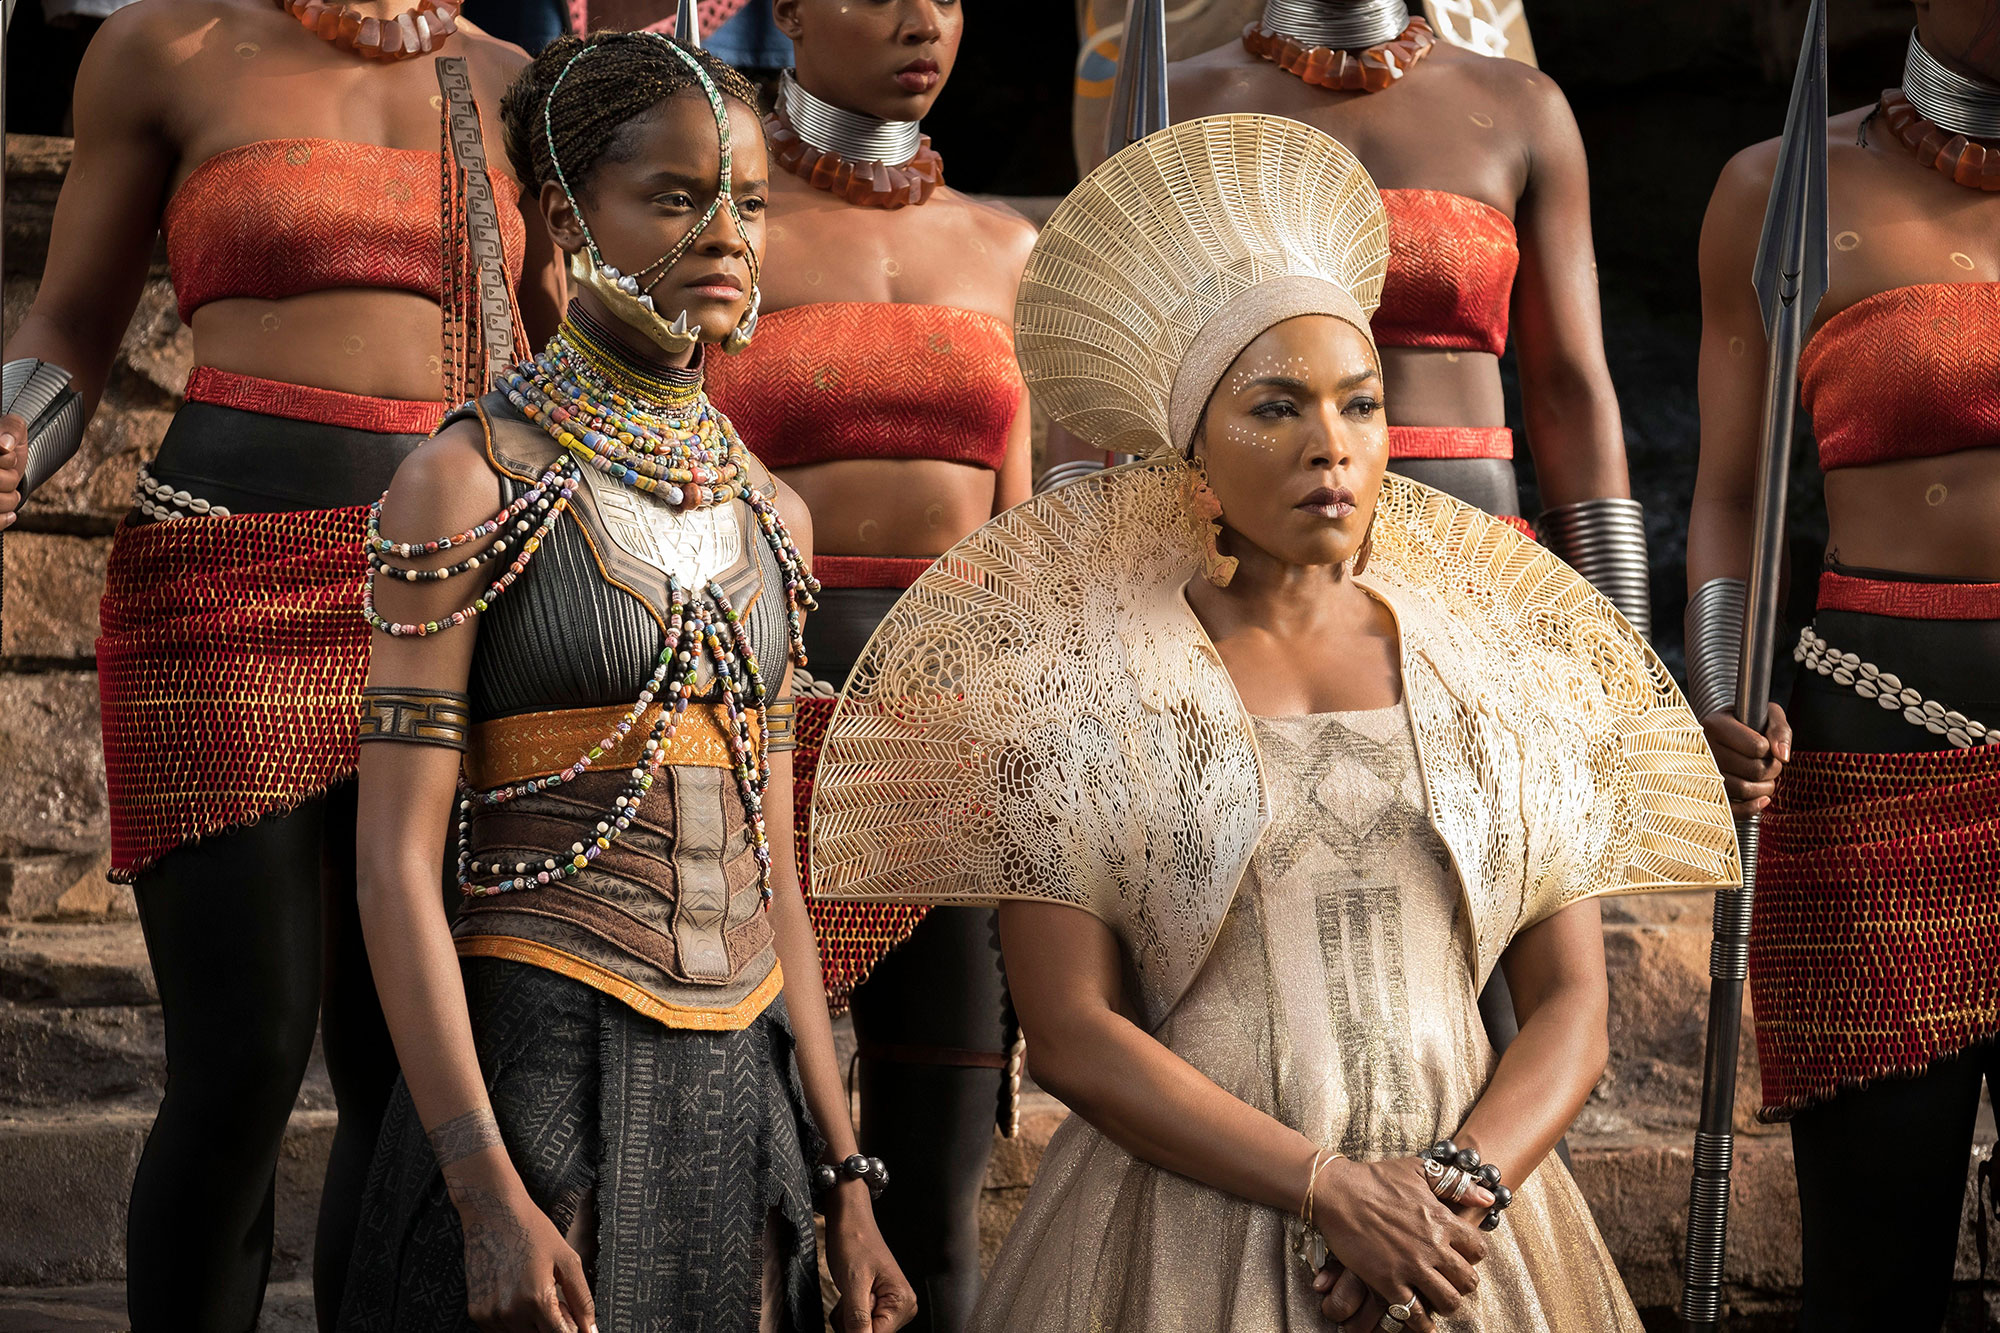 Black Panther: Wakanda Forever: Story changes post Chadwick Boseman